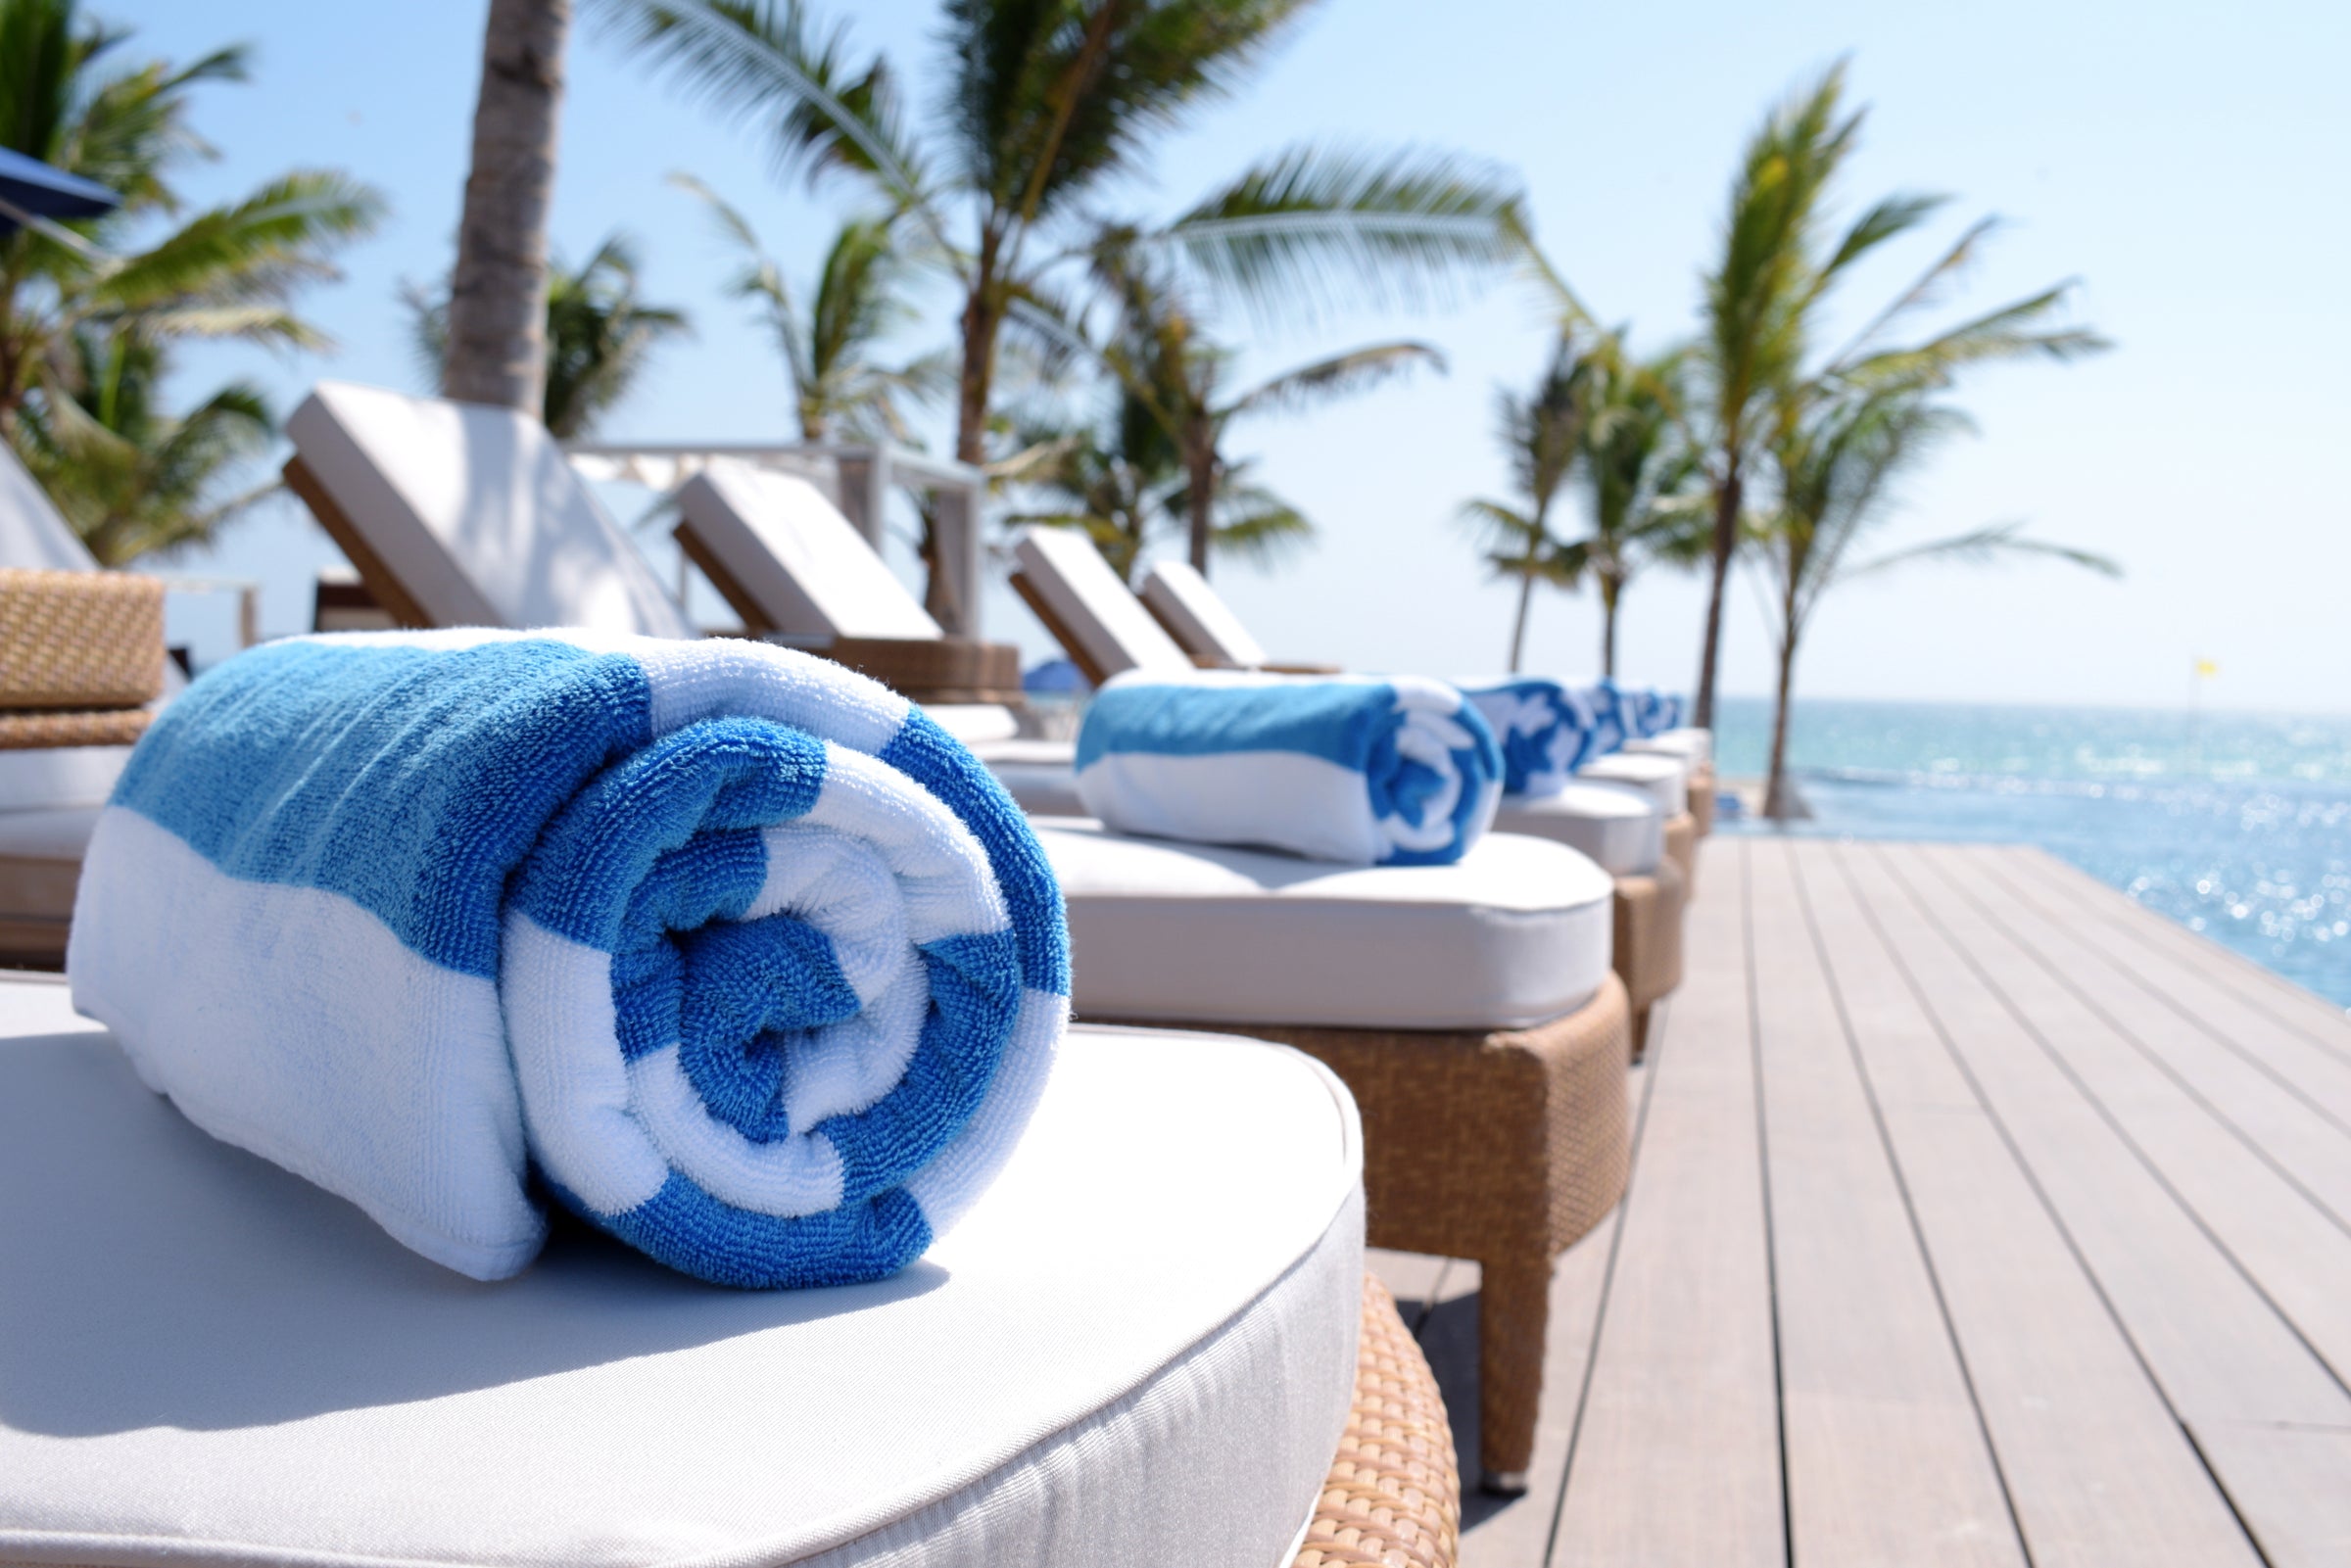 Pool/Cabana Towels